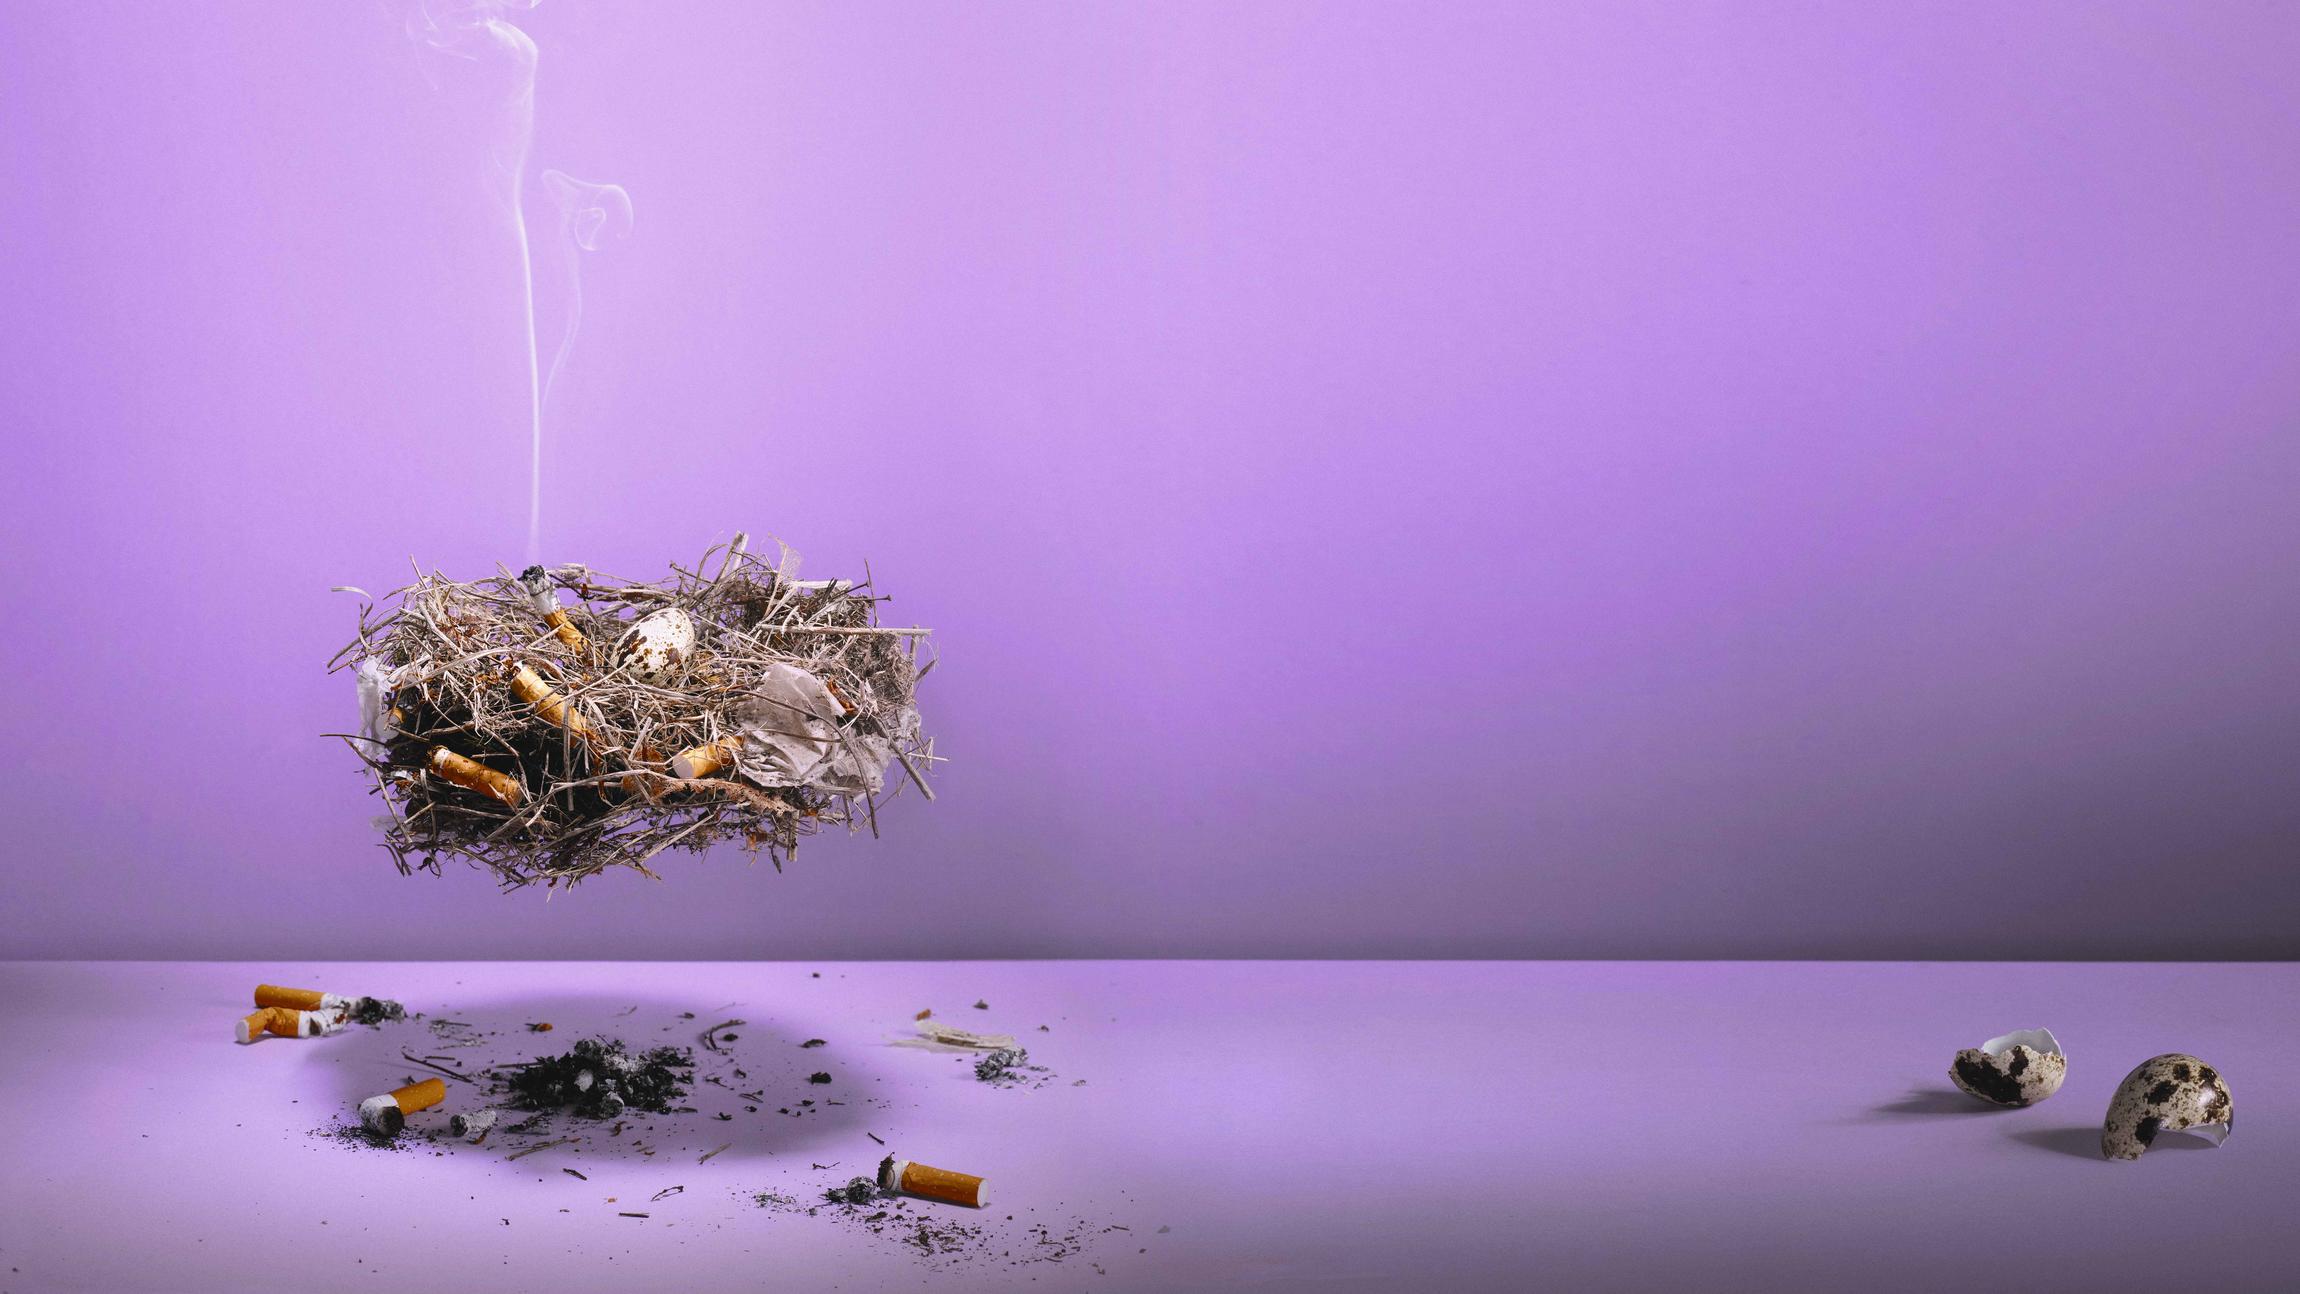 En fuglerede med indbyggede cigaretskod, der ryger 